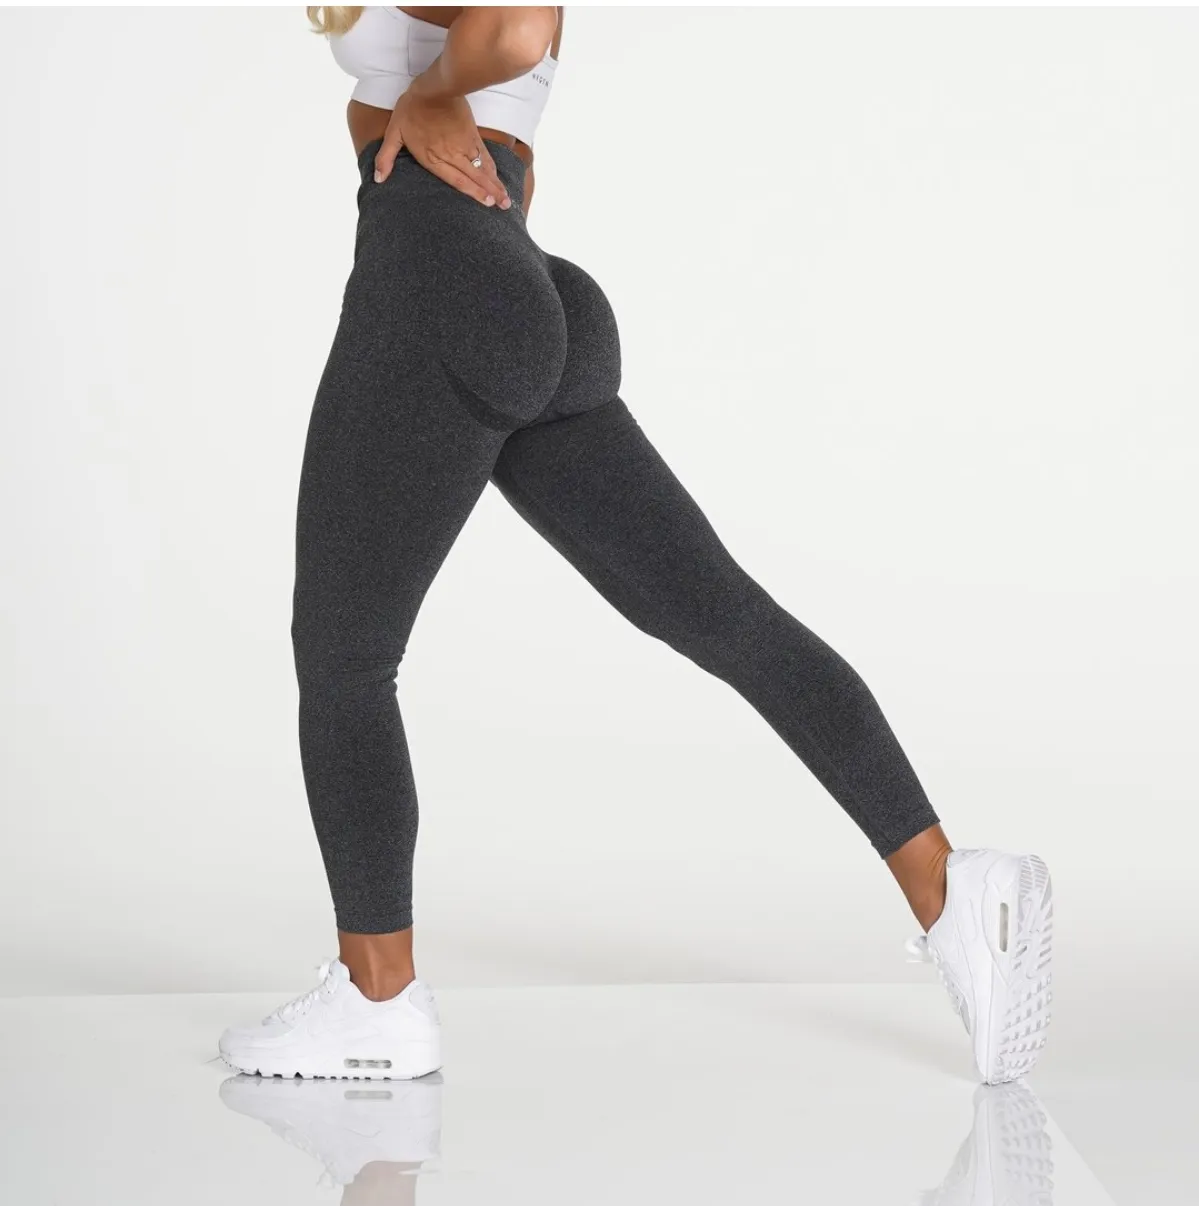 Pantalon de Yoga élastique taille haute, personnalisé, legging noir moucheté sans couture